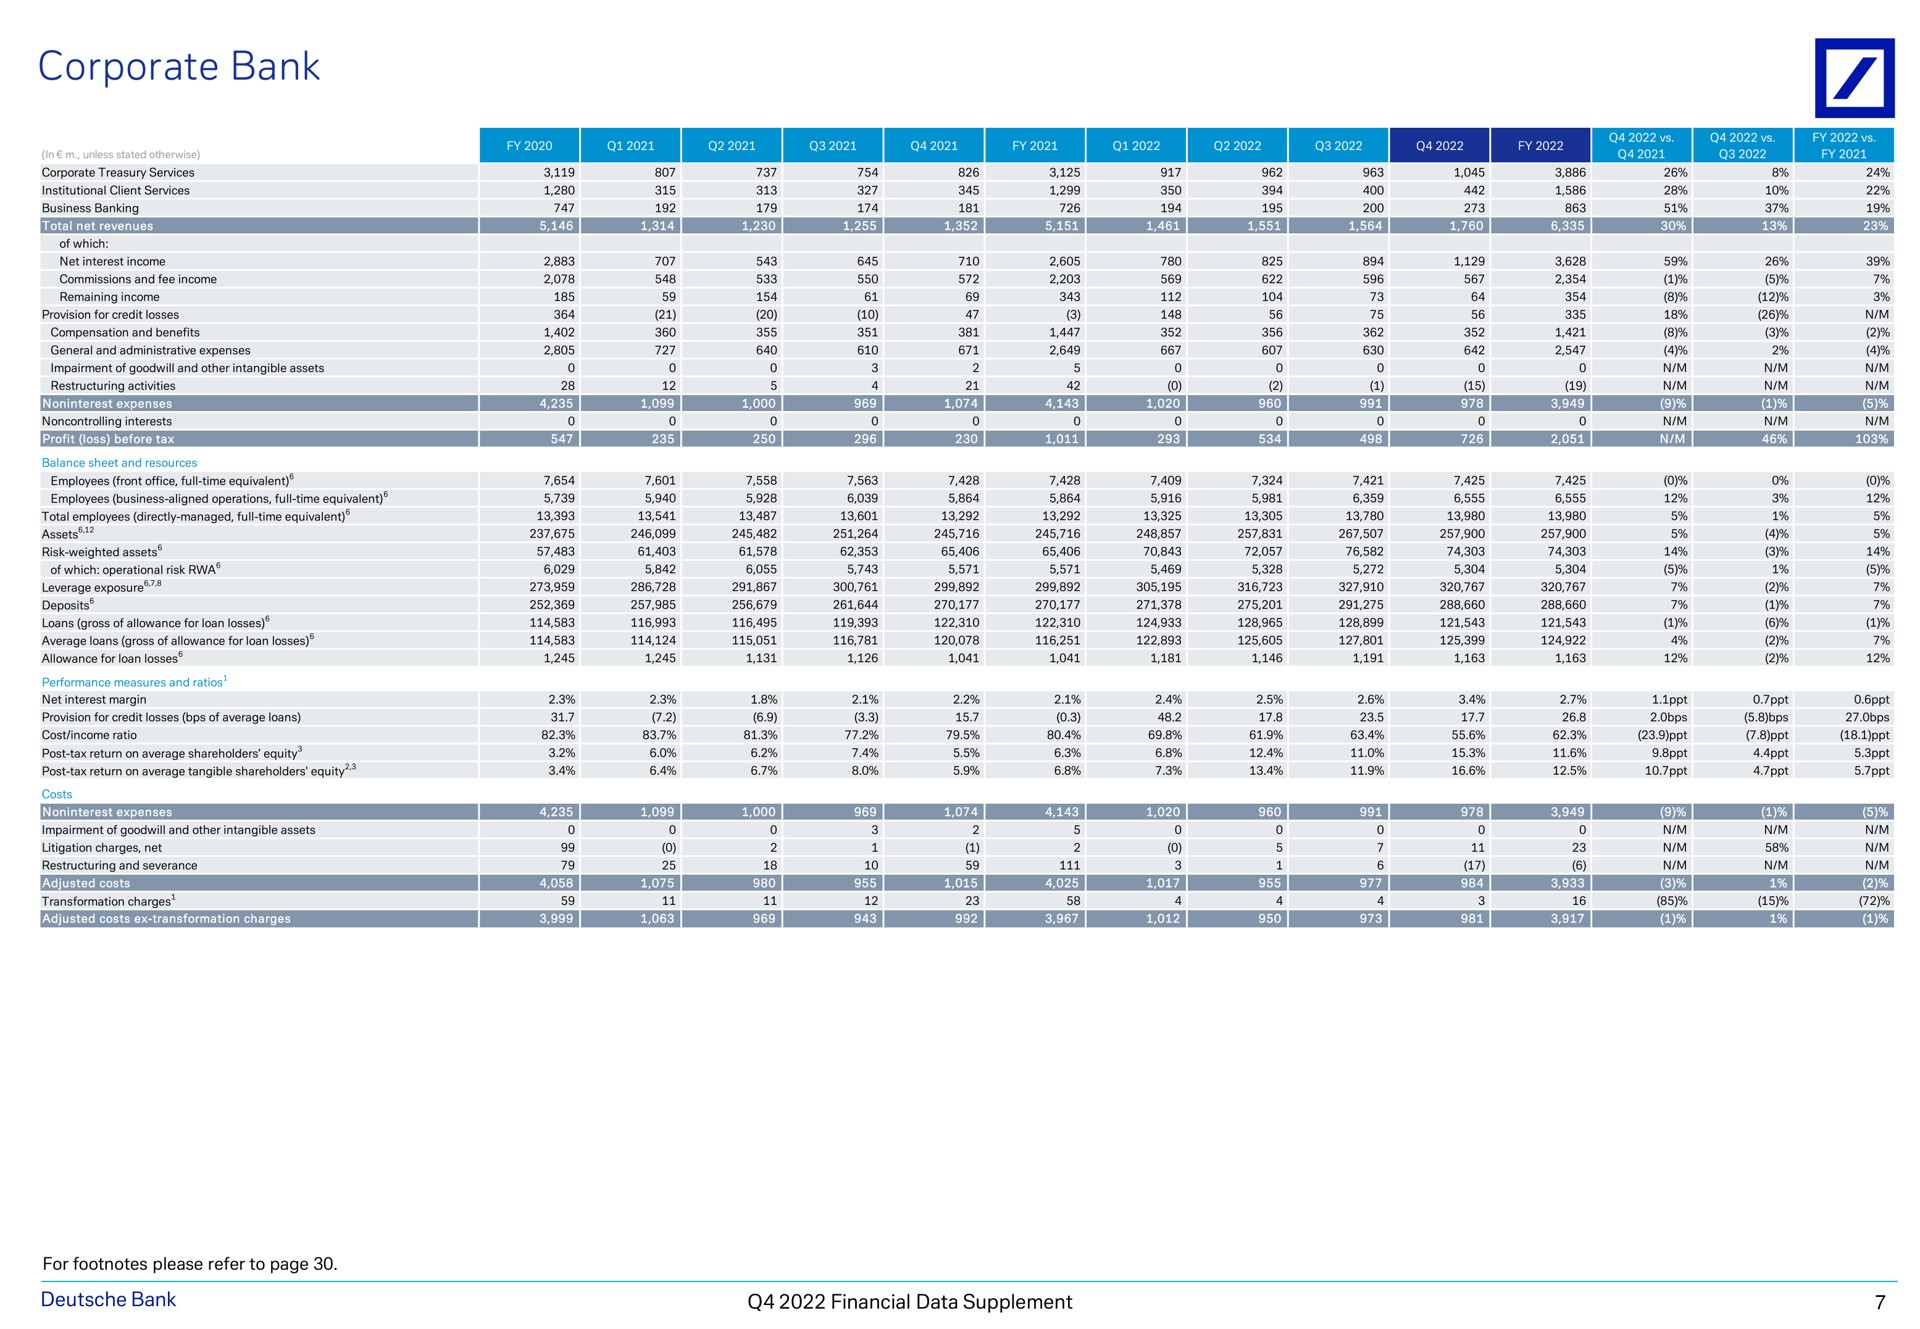 corporate bank at a a i a a financial data supplement | Deutsche Bank